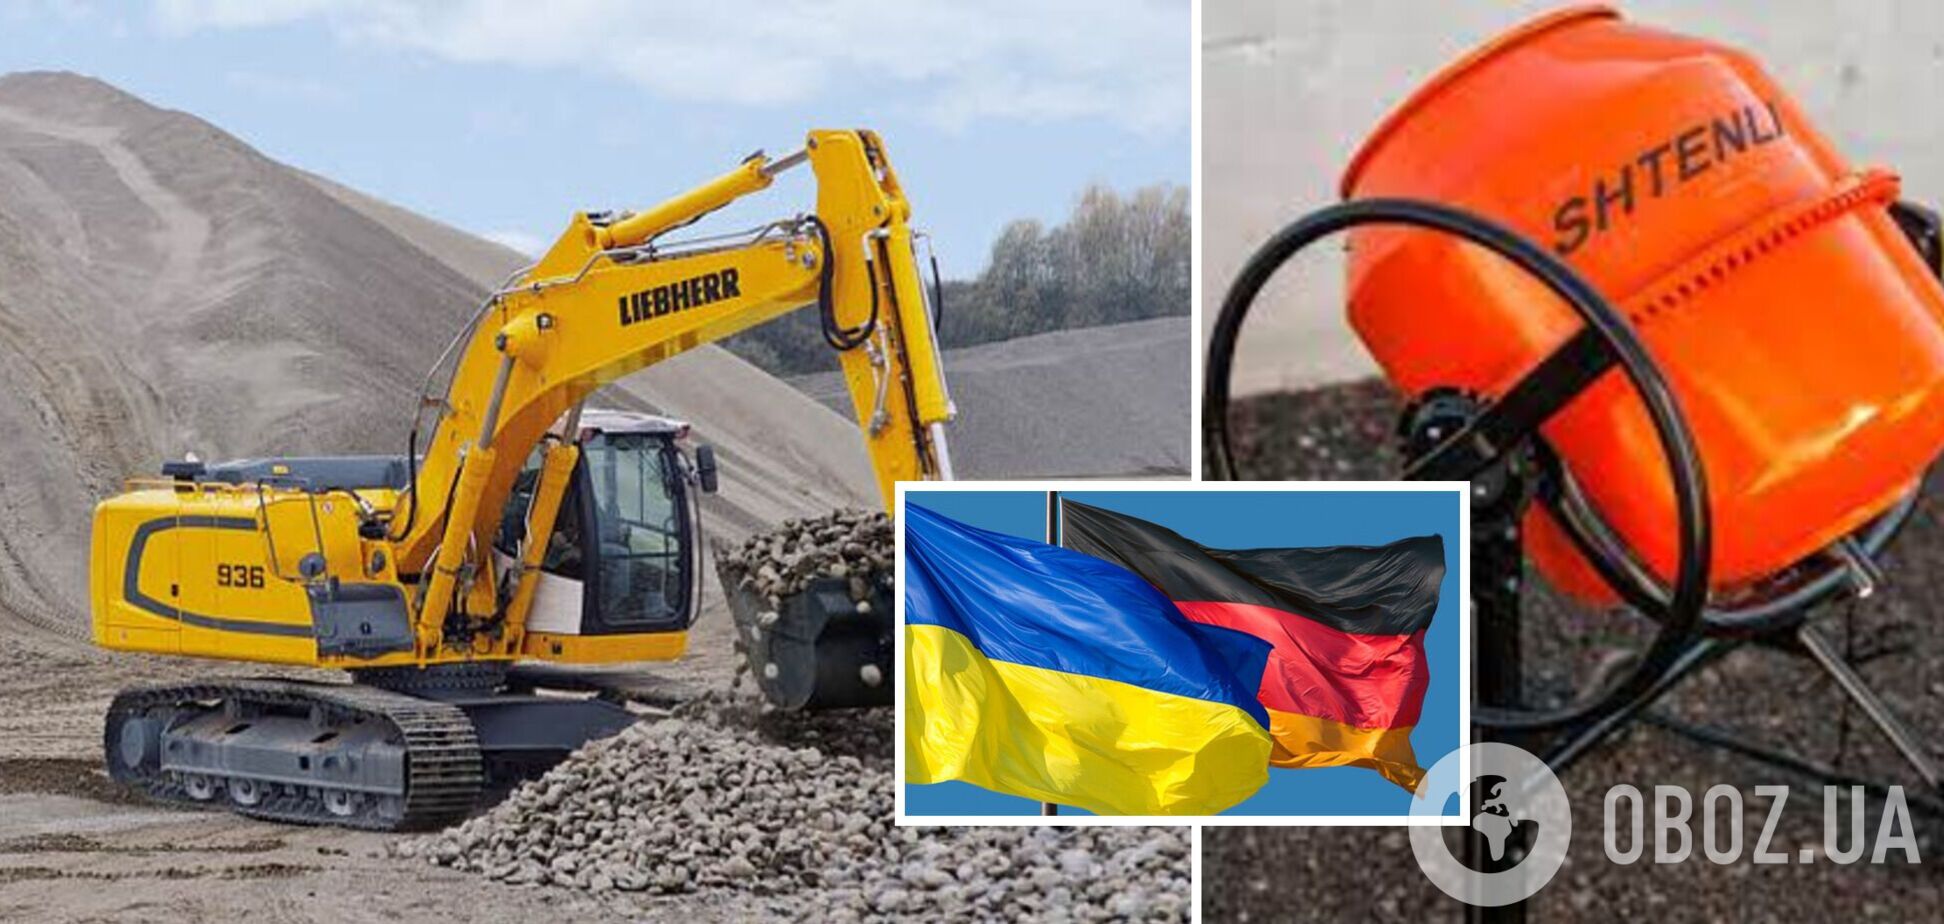 Украина получит от Германии партию гуманитарной помощи: какая техника войдет в нее. Фото